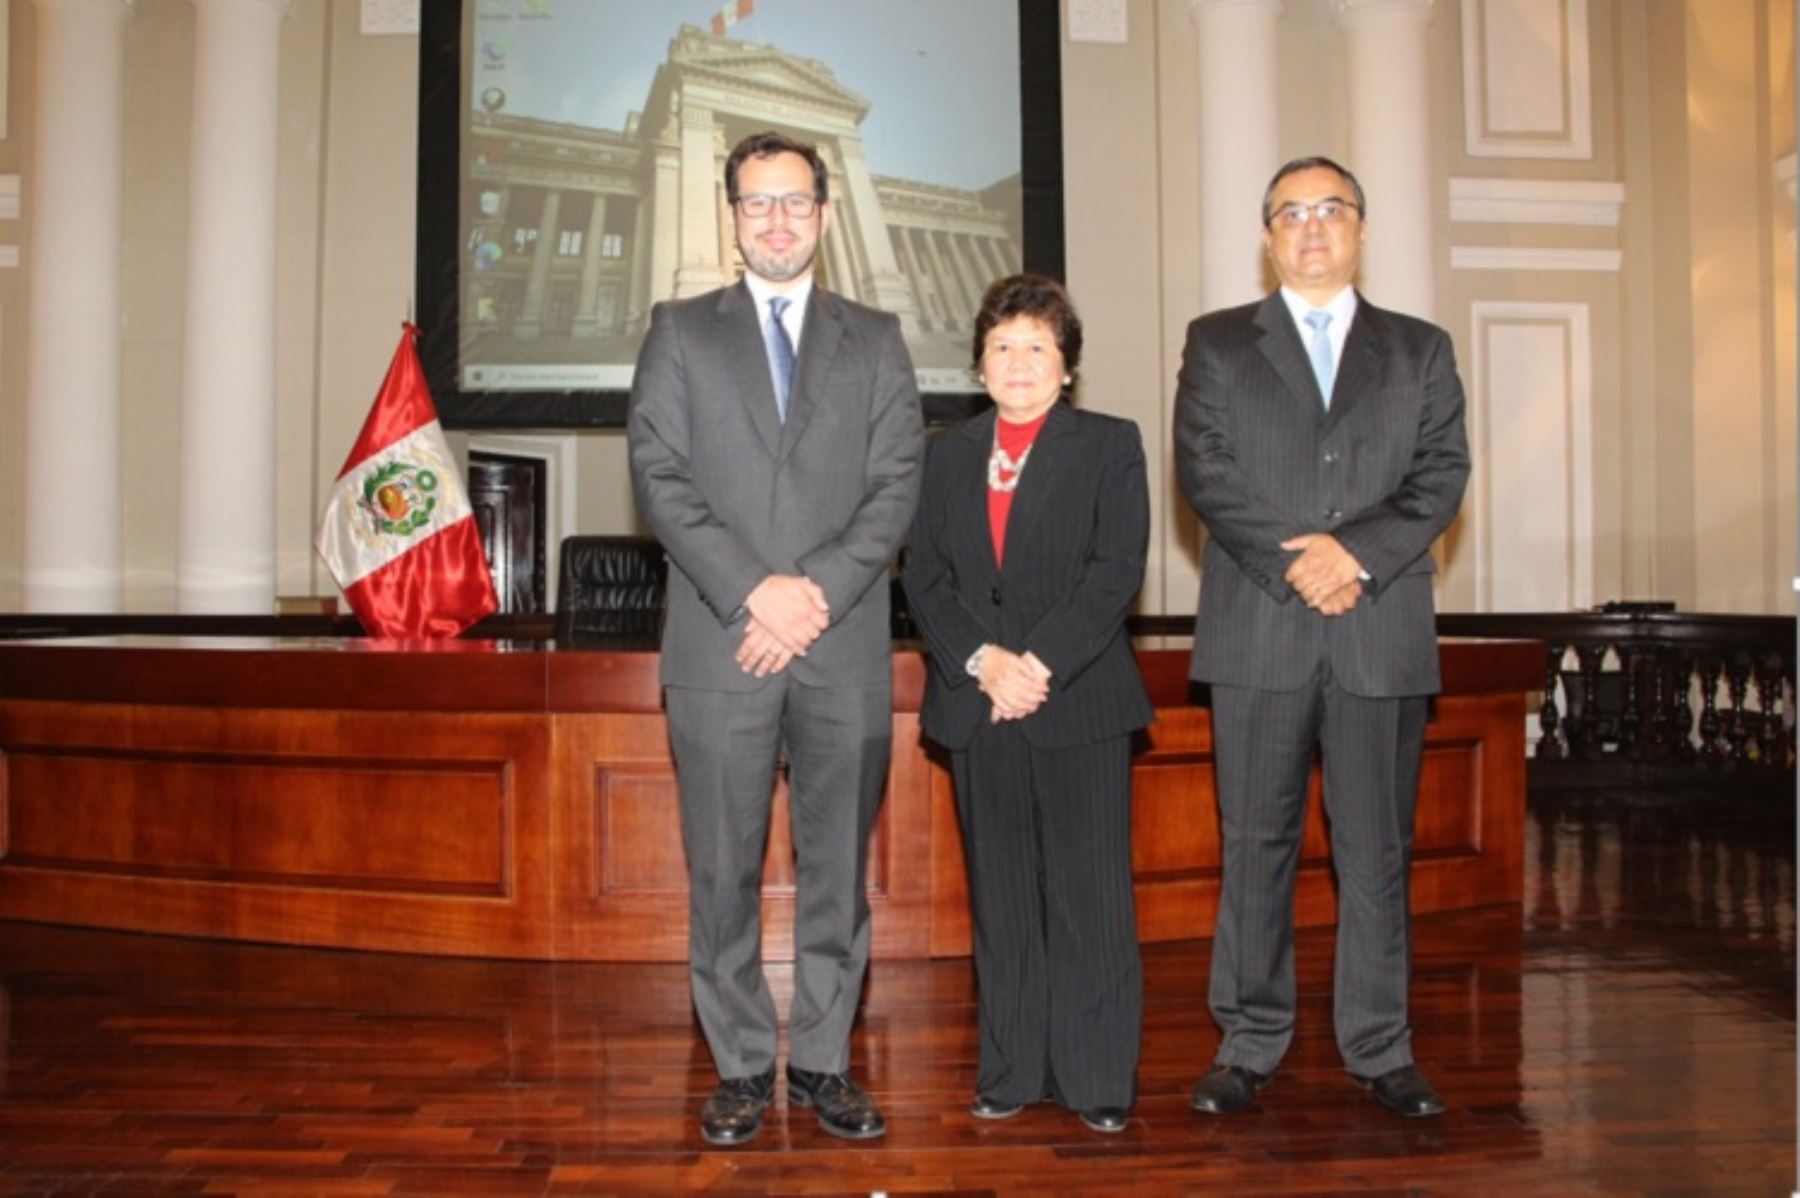 Economistas Diego Macera Poli, Marylin Choy Chong y Carlos Oliva Neyra juramentaron al cargo de directores del Banco Central de Reserva del Perú (BCR), Foto: Cortesía.